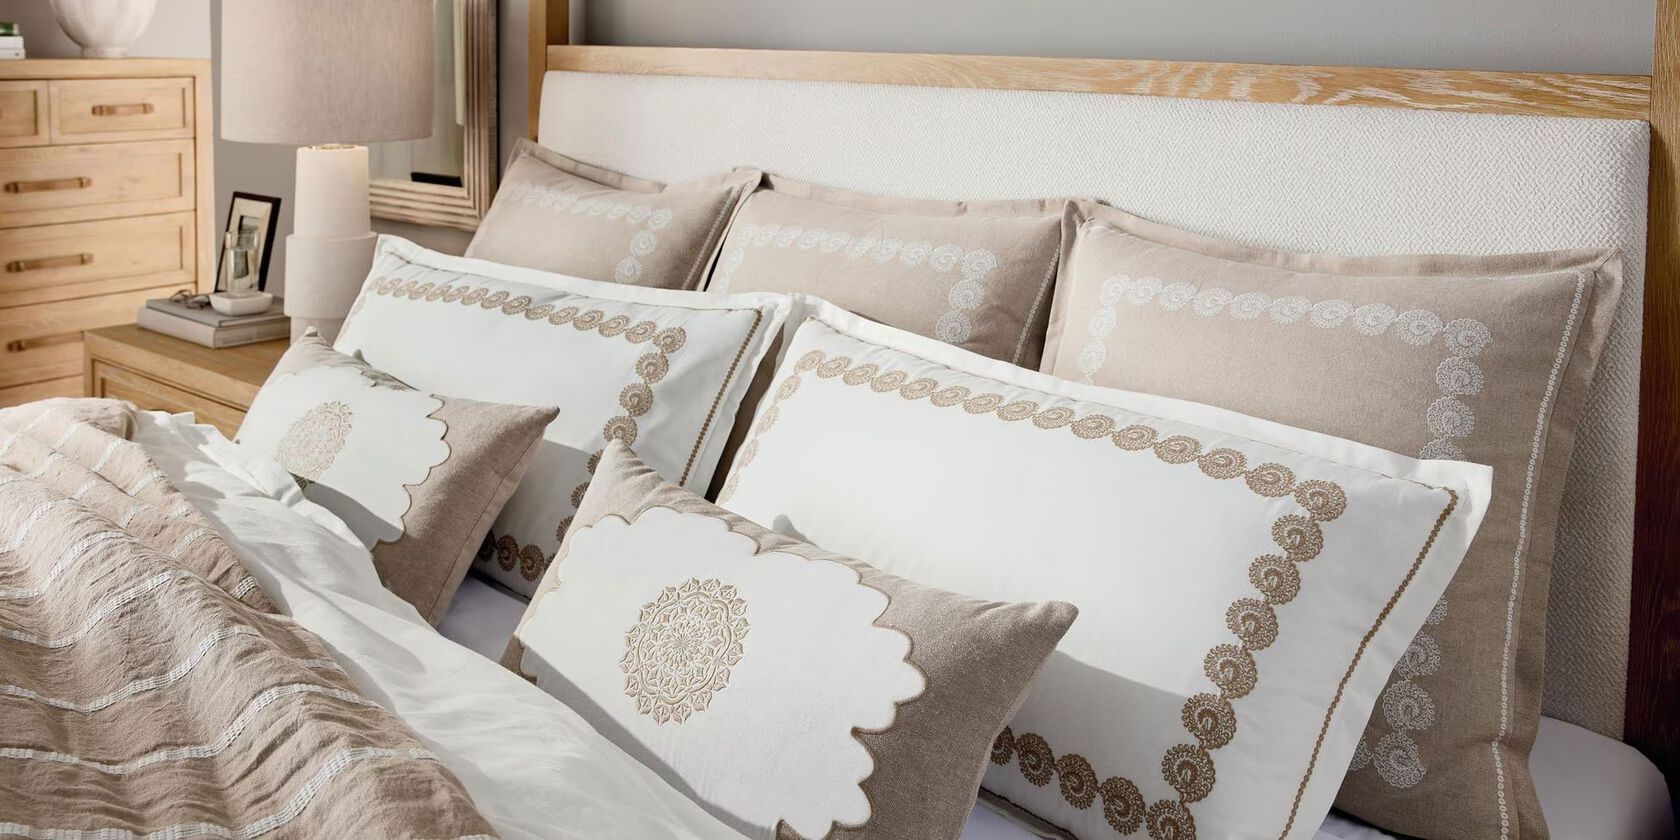 Decorative Bedding Pillows